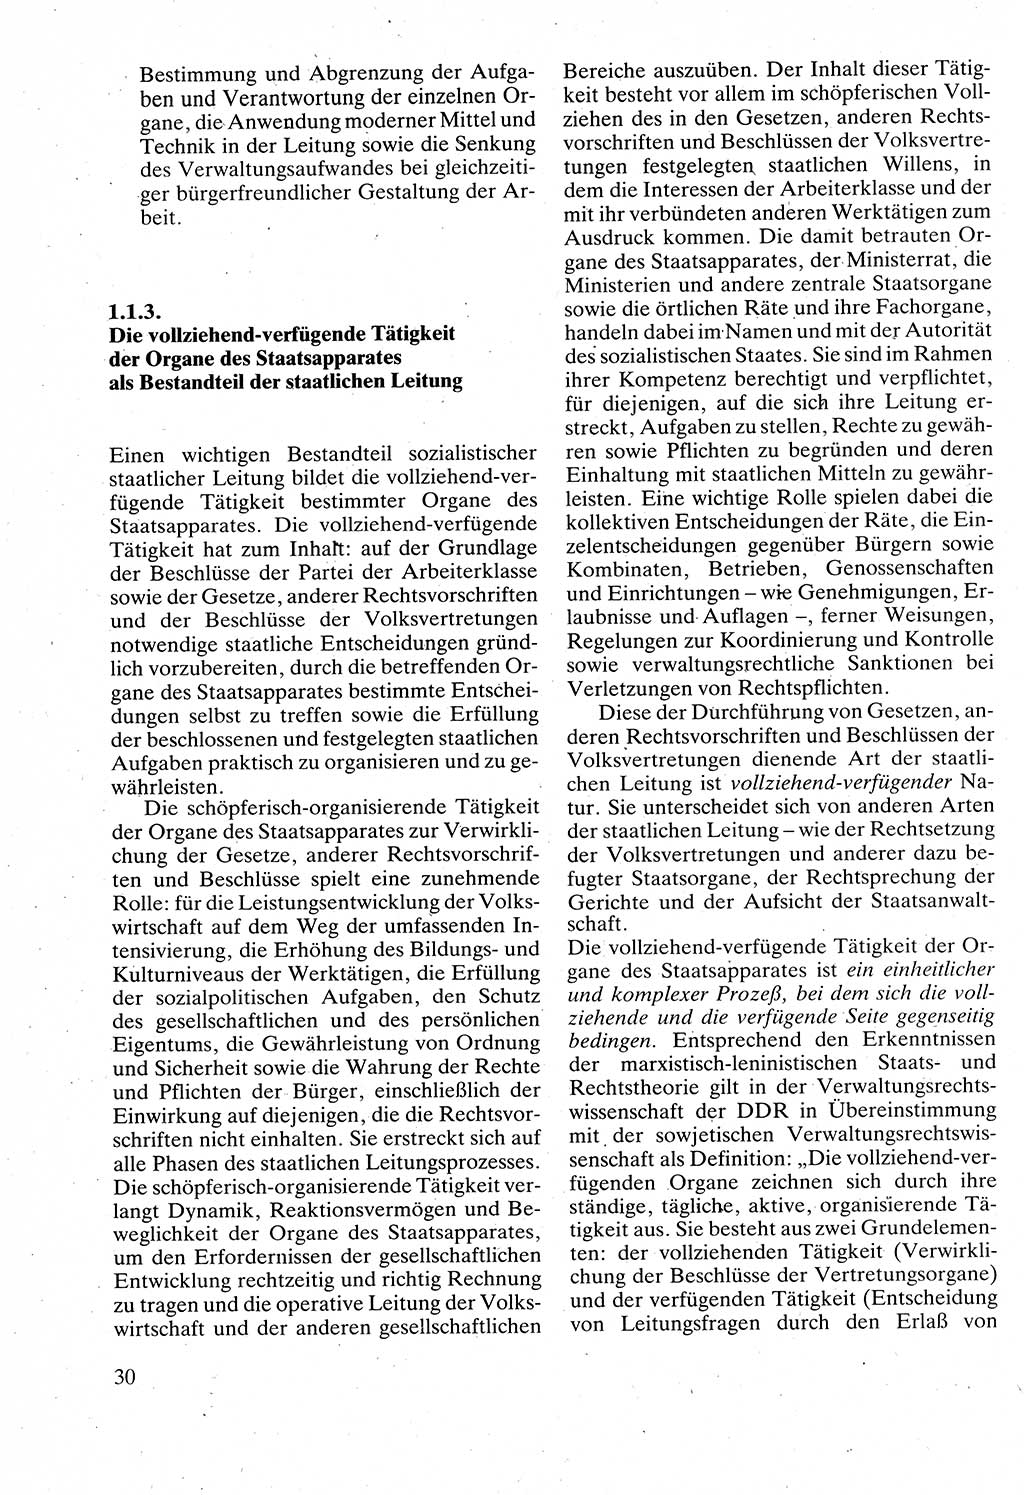 Verwaltungsrecht [Deutsche Demokratische Republik (DDR)], Lehrbuch 1988, Seite 30 (Verw.-R. DDR Lb. 1988, S. 30)